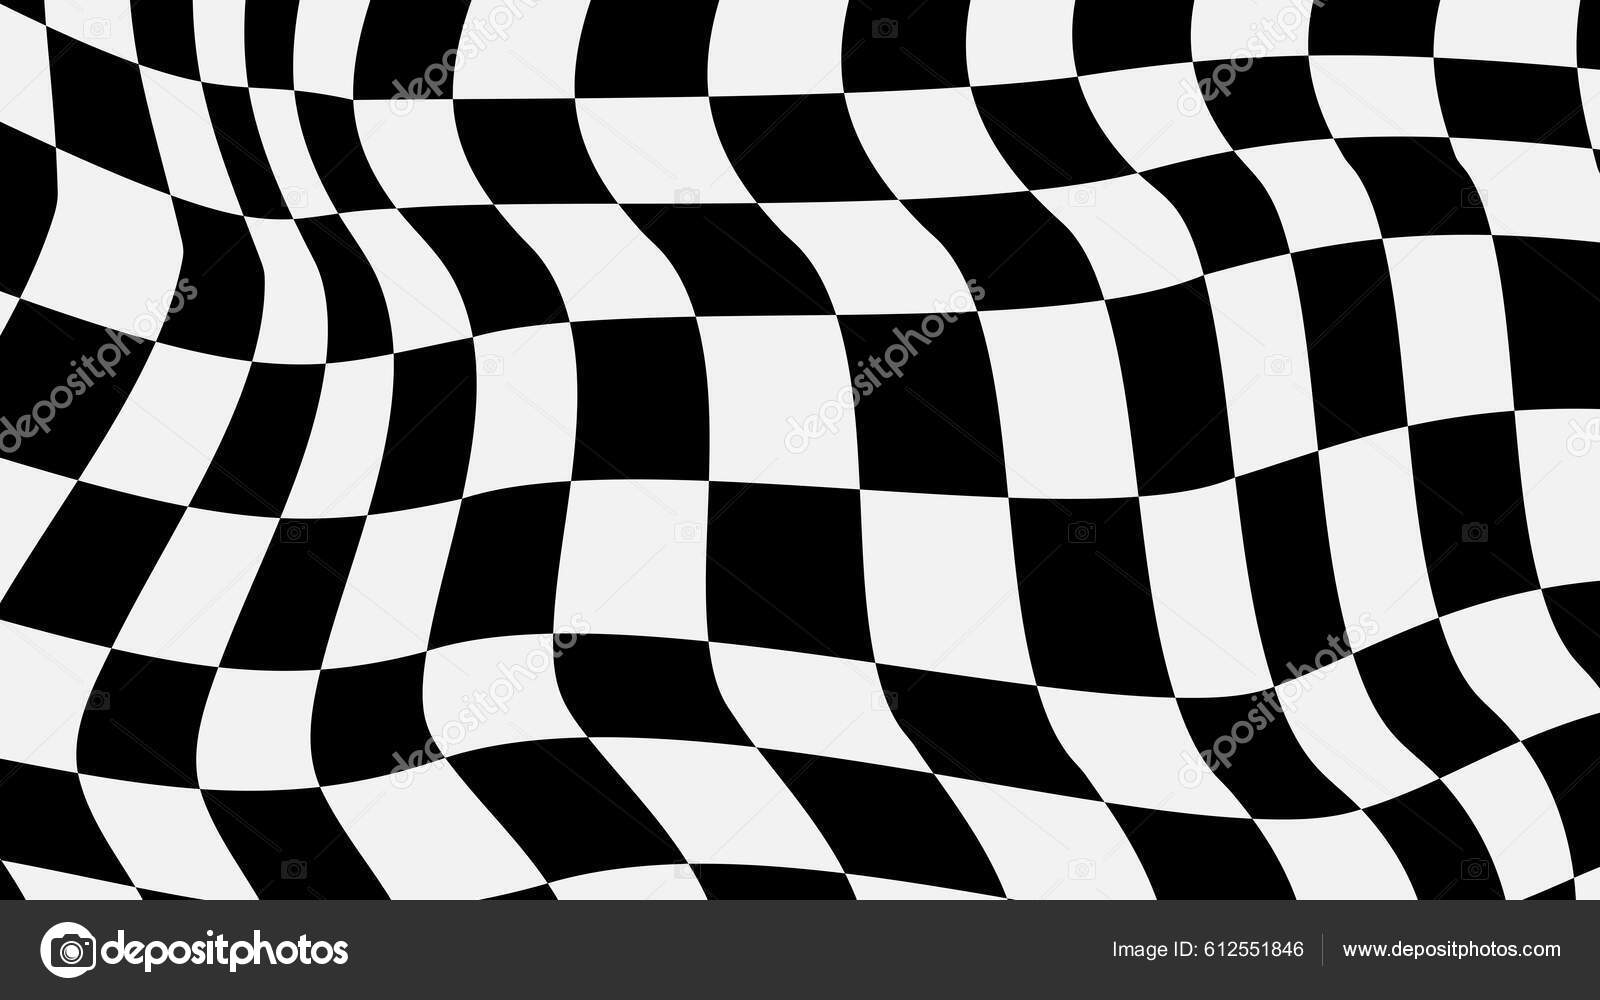 Fundo xadrez xadrez preto e azul xadrez xadrez perfeito para pano de fundo  papel de parede